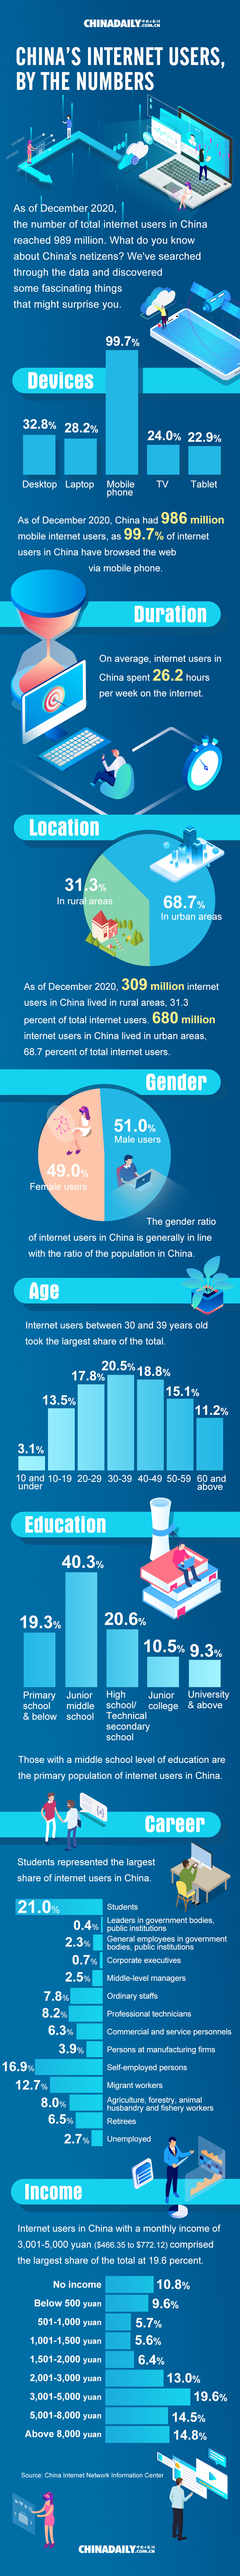 China Internet Users.jpeg